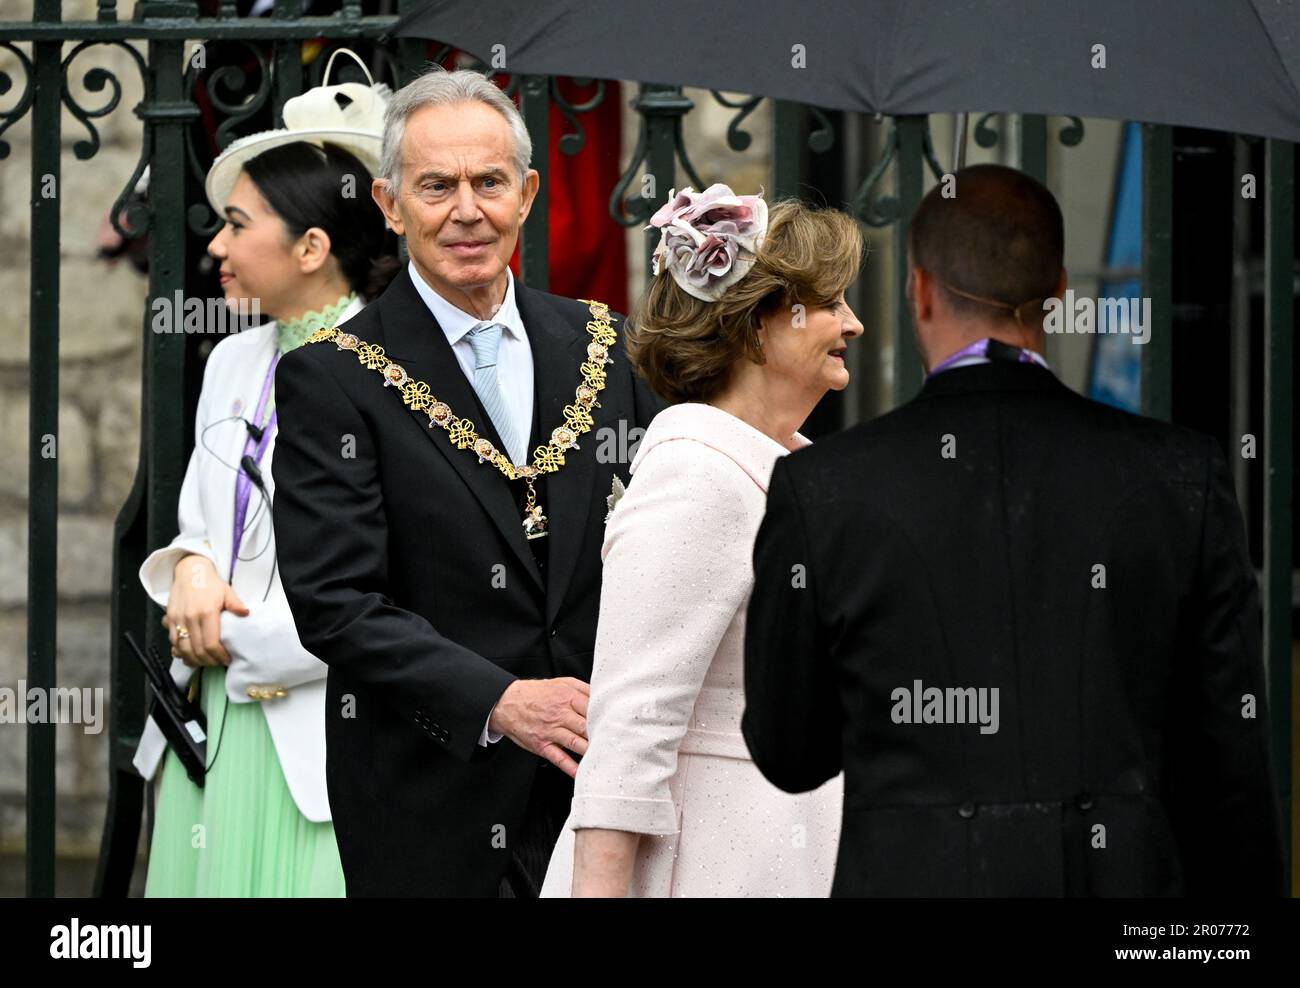 Der ehemalige Premierminister Tony Blair und seine Frau Cherie Blair verlassen Westminster Abbey nach der Krönungszeremonie von König Karl III. Und Königin Camilla im Zentrum von London. Foto: Samstag, 6. Mai 2023. Stockfoto